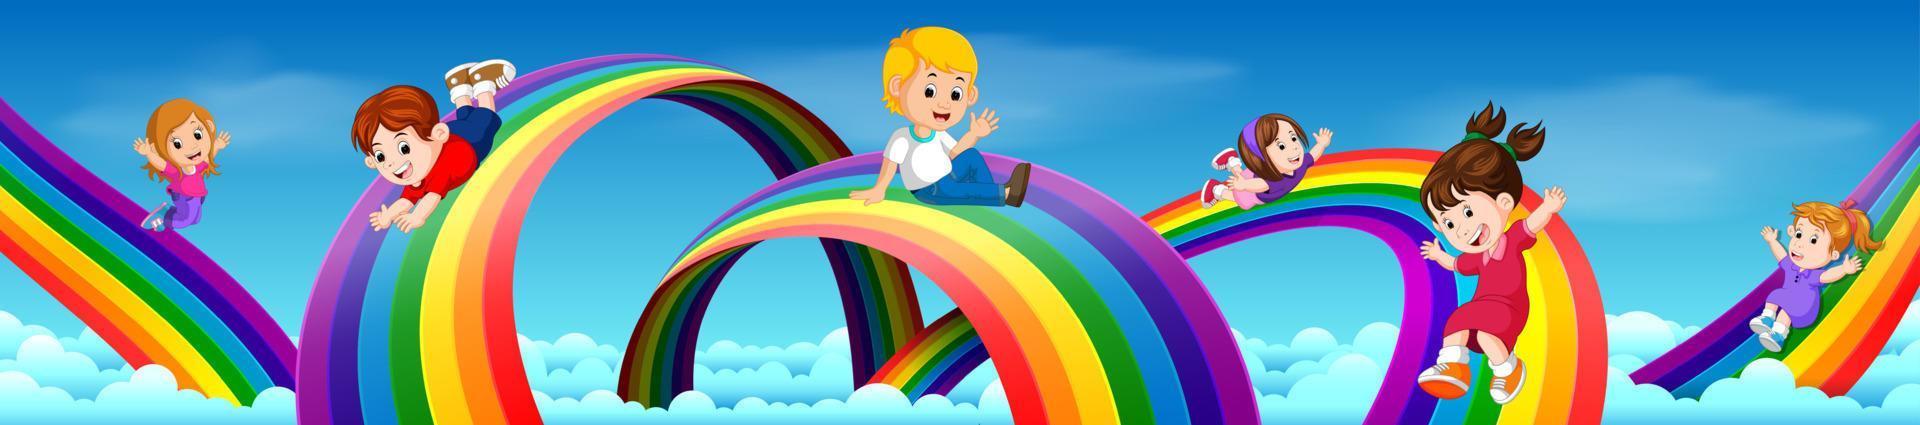 crianças dos desenhos animados deslizando pelo arco-íris vetor